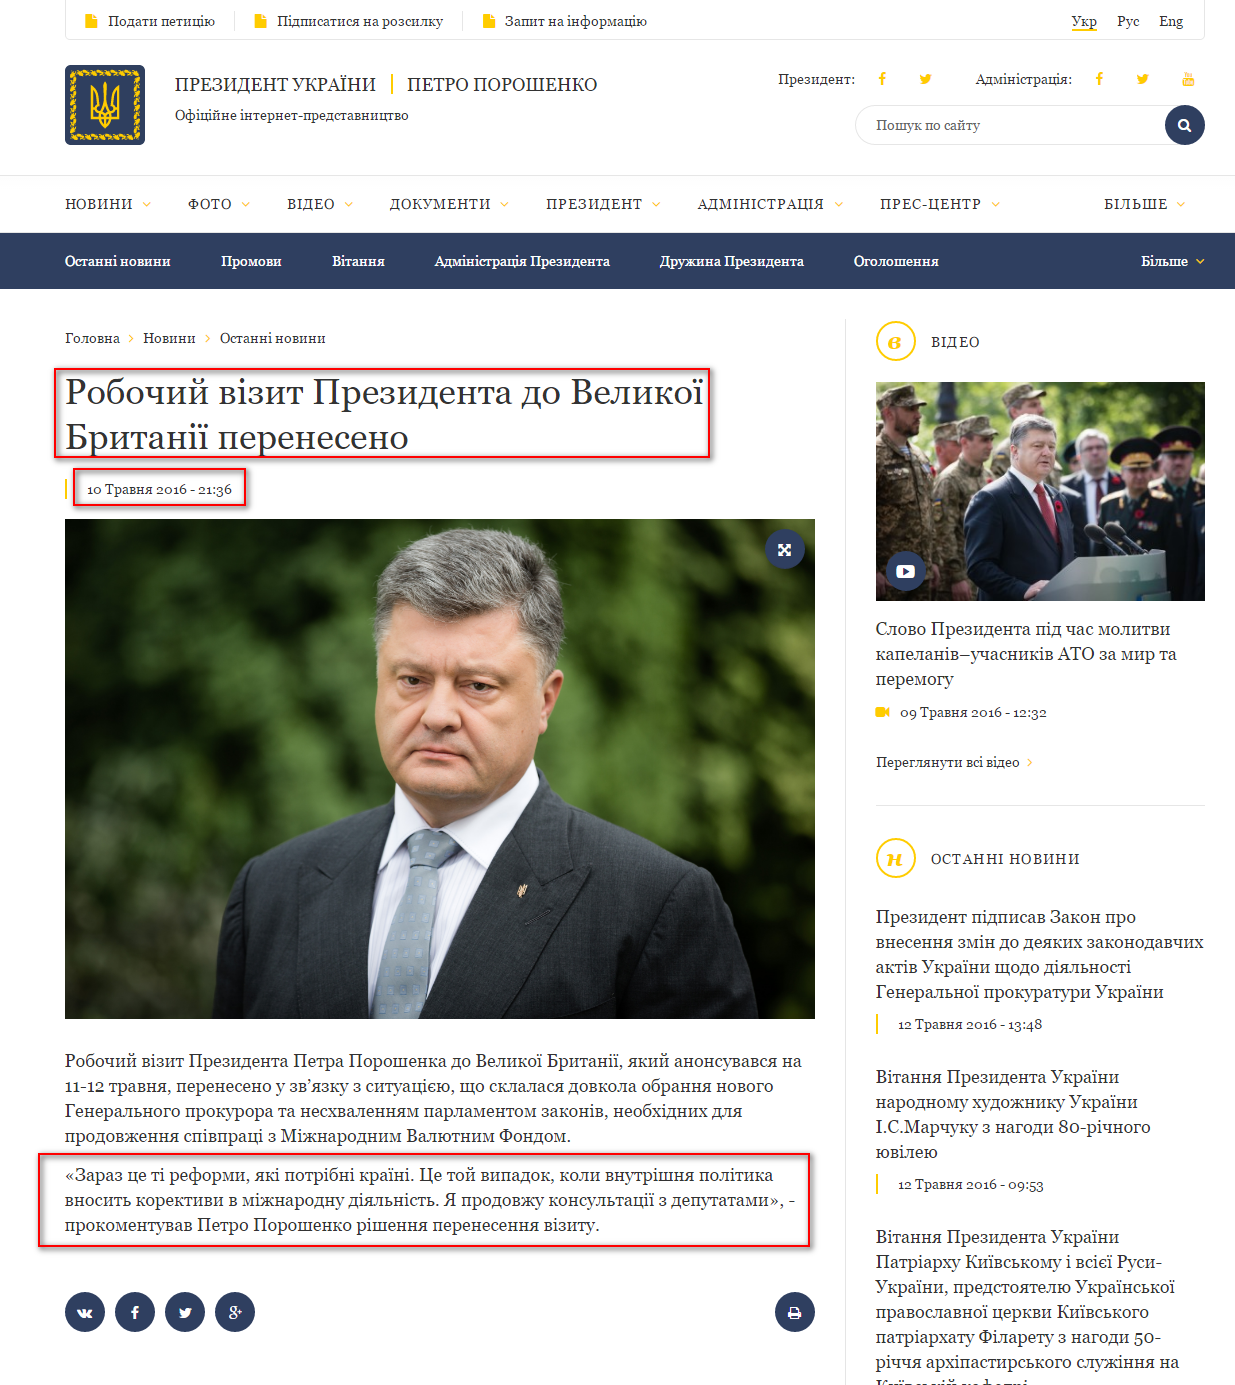 http://www.president.gov.ua/news/robochij-vizit-prezidenta-do-velikoyi-britaniyi-pereneseno-37084